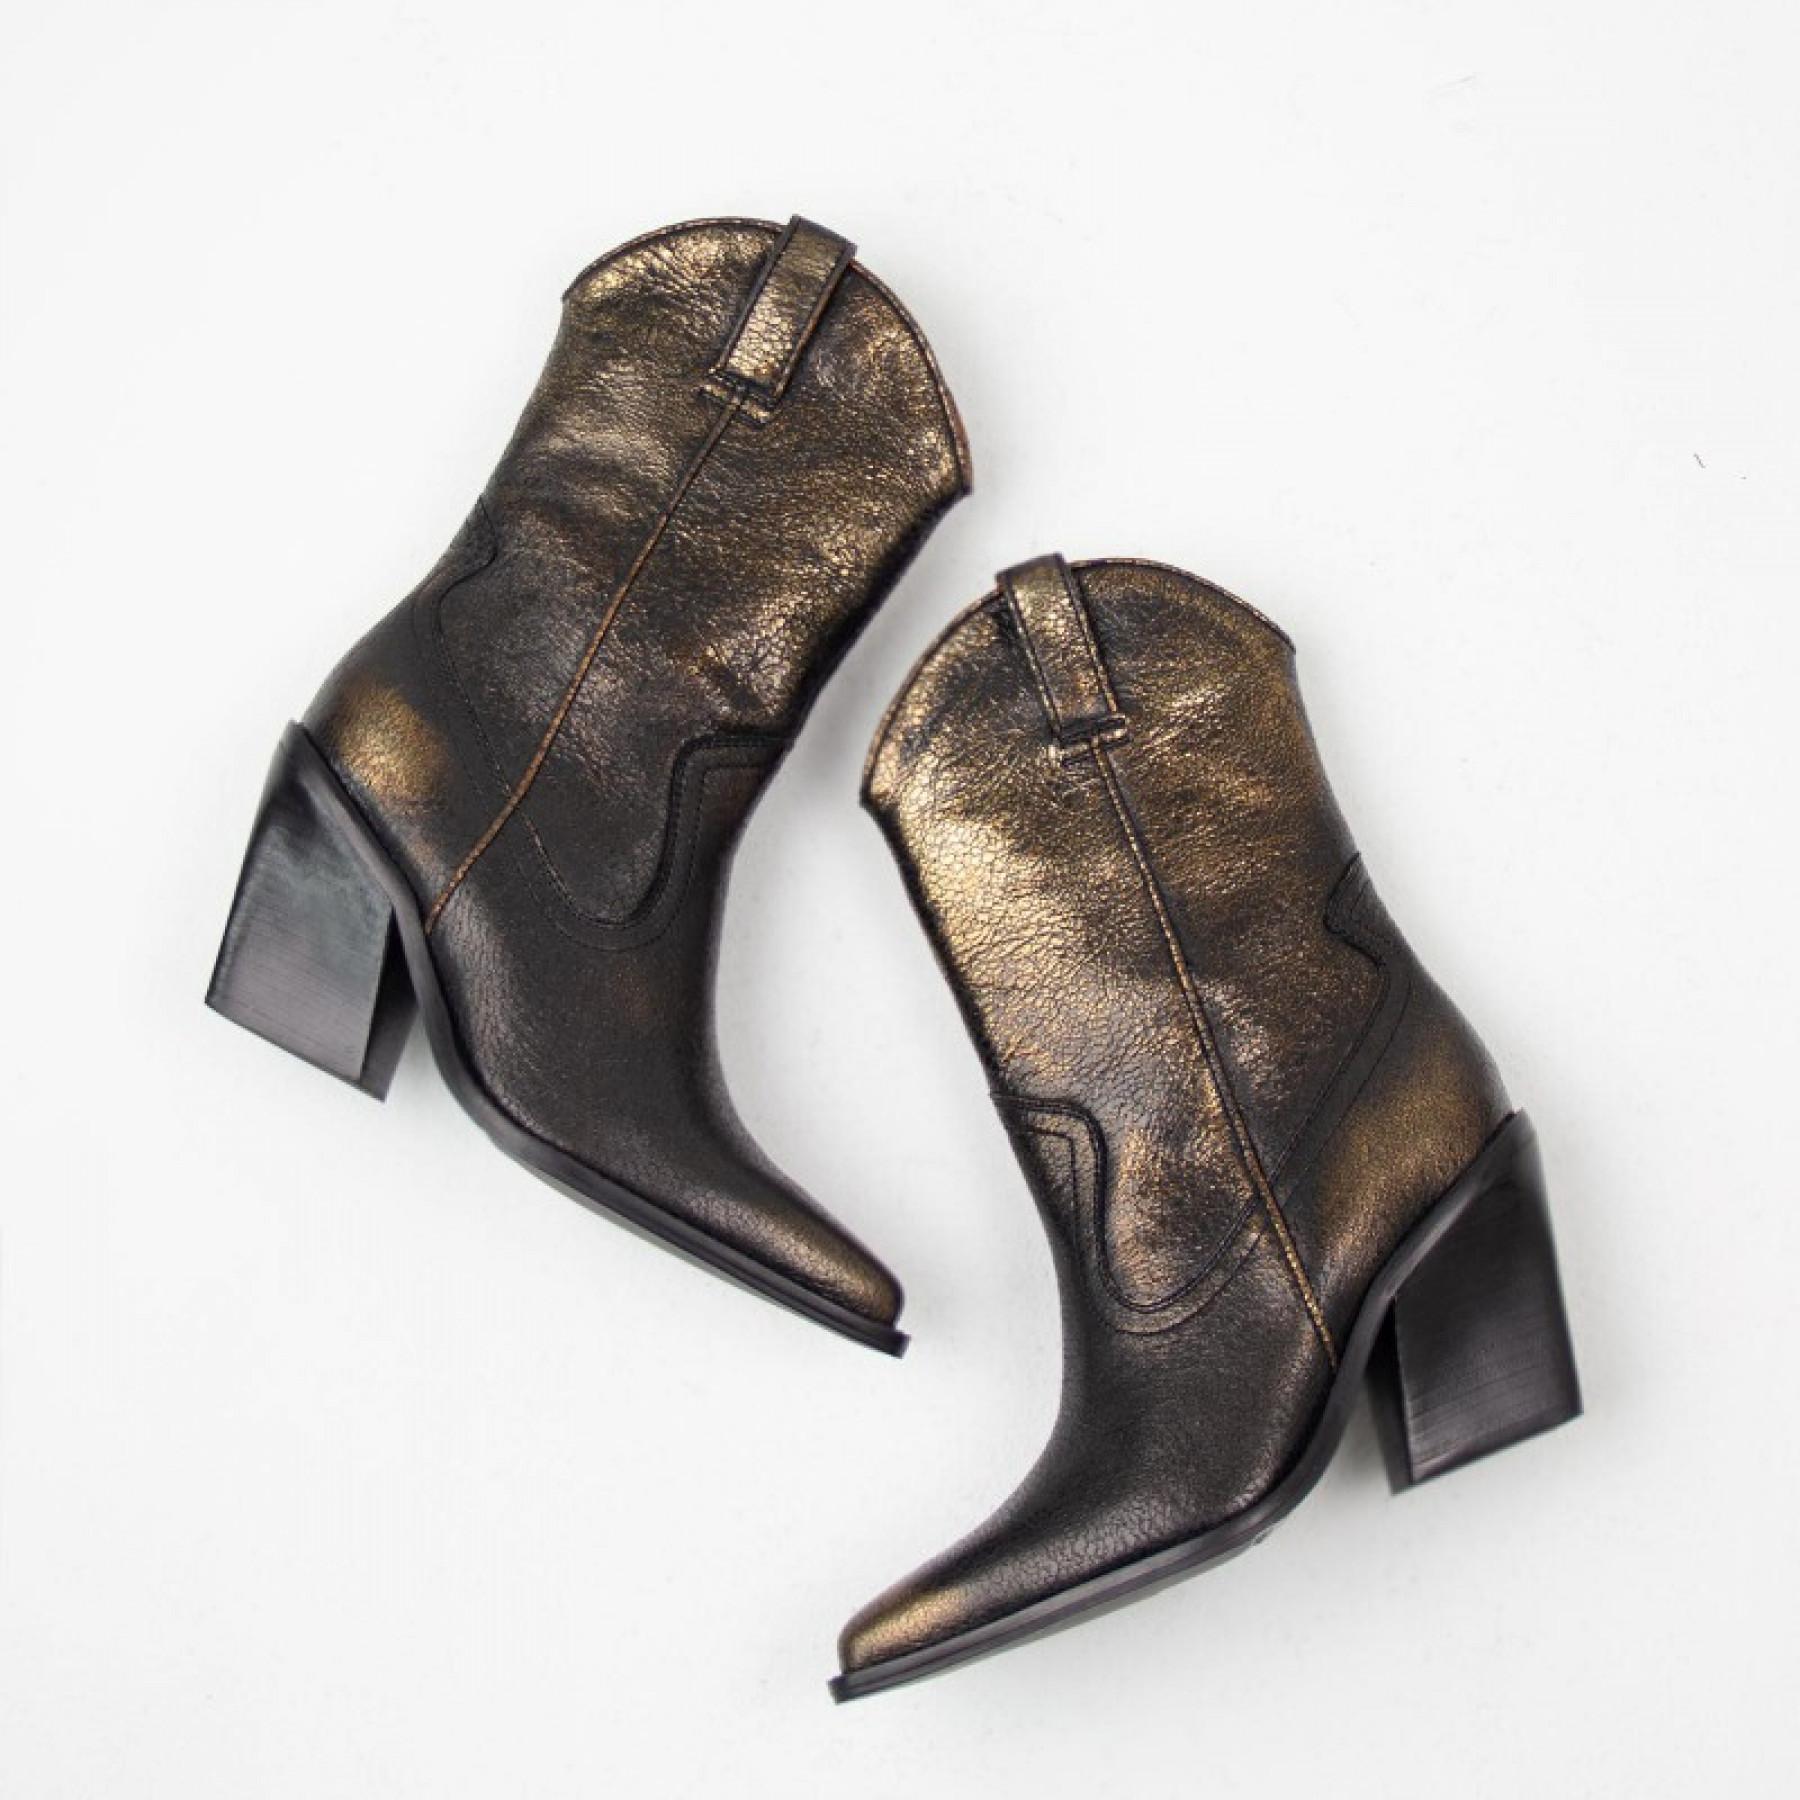 Leather boots woman Bronx New-Kole